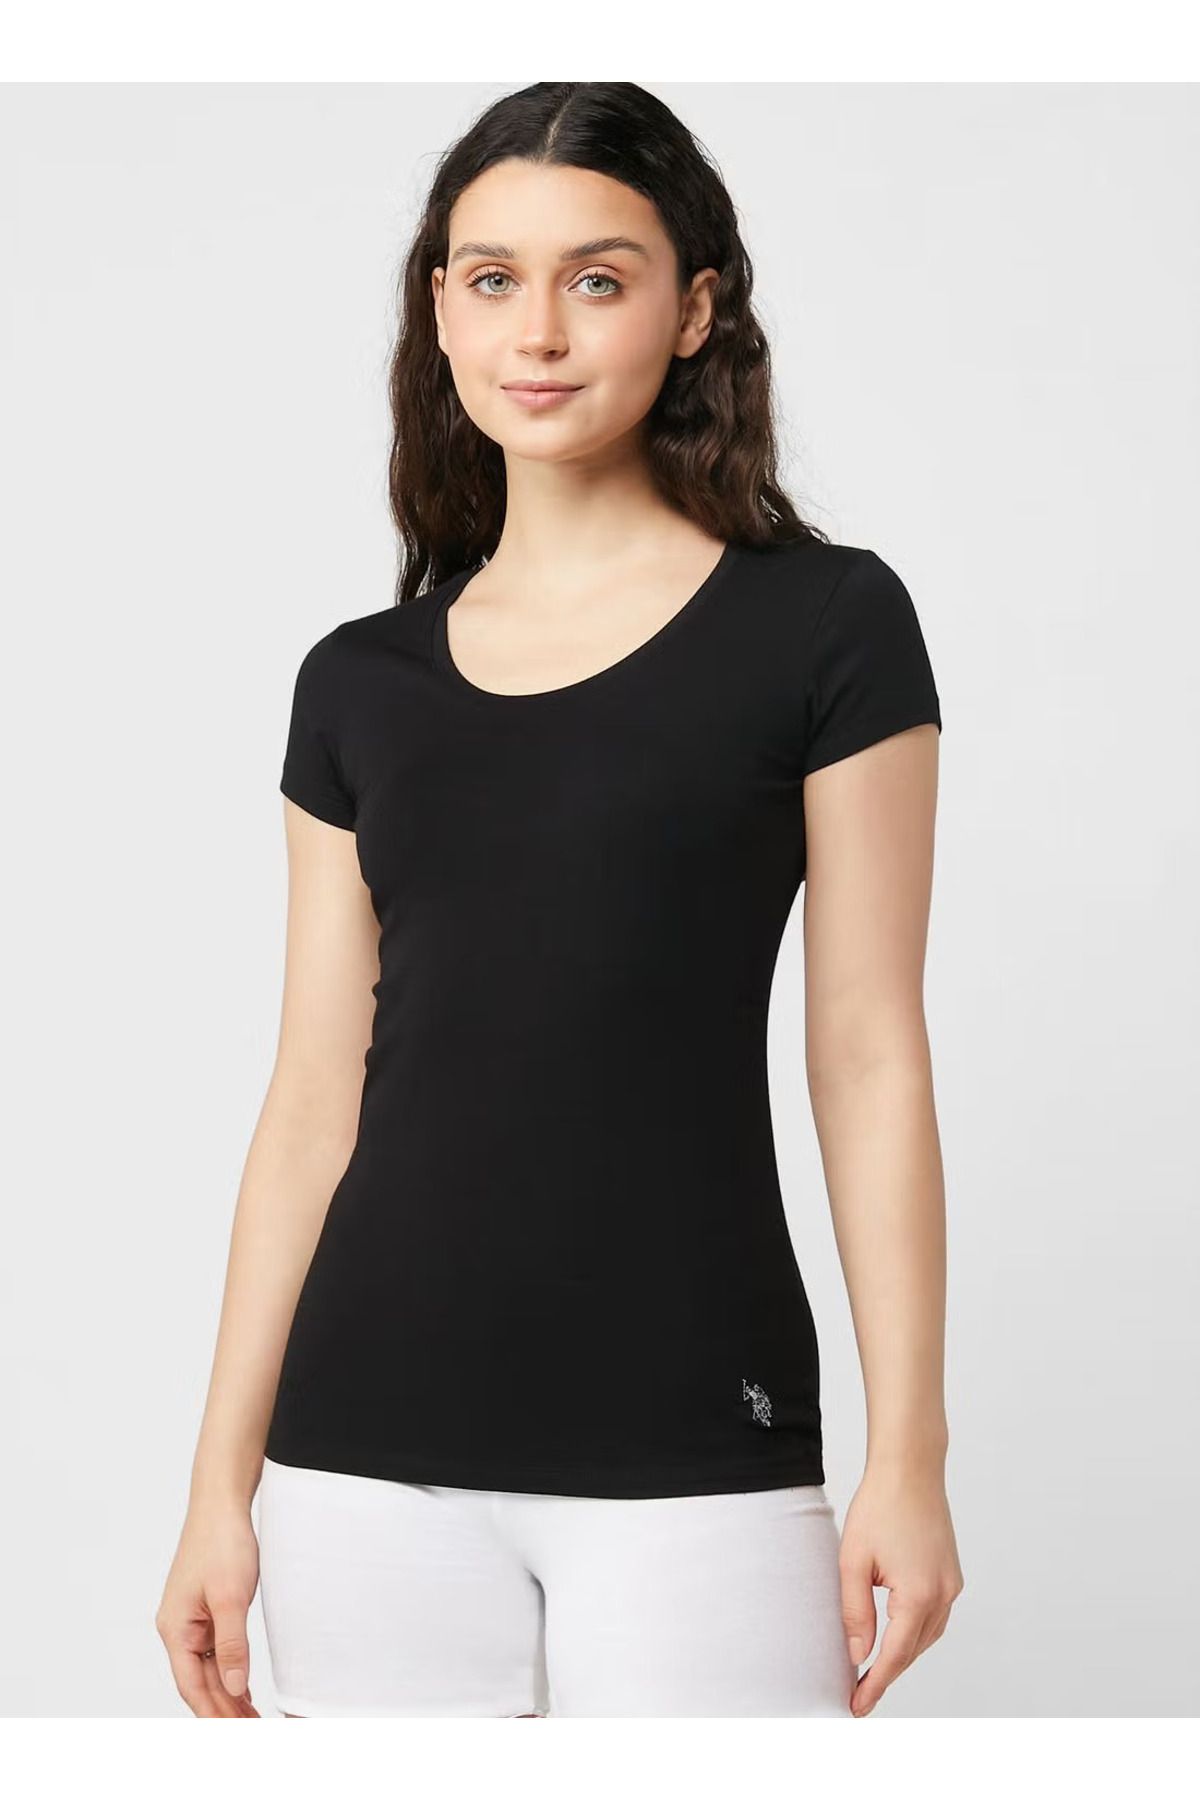 U.S. Polo Assn. Kadın Pamuklu Likralı Modal Basic Derin Yakalı Kısa Kollu Siyah T-shirt